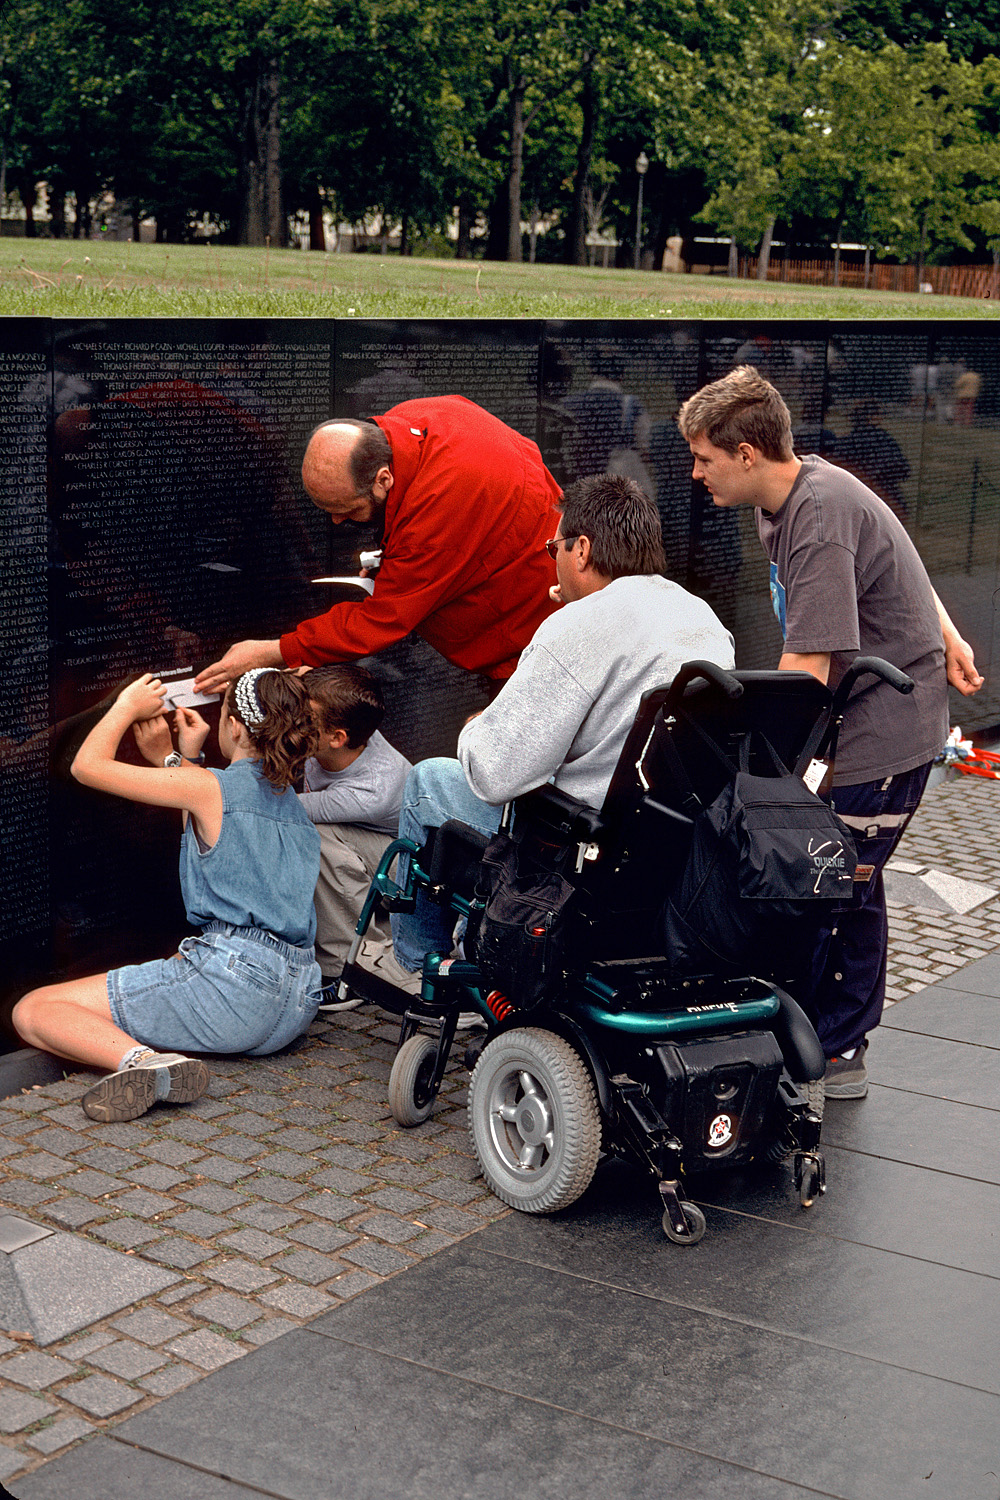 bill-hocker-vietnam-memorial-washington-dc-2001